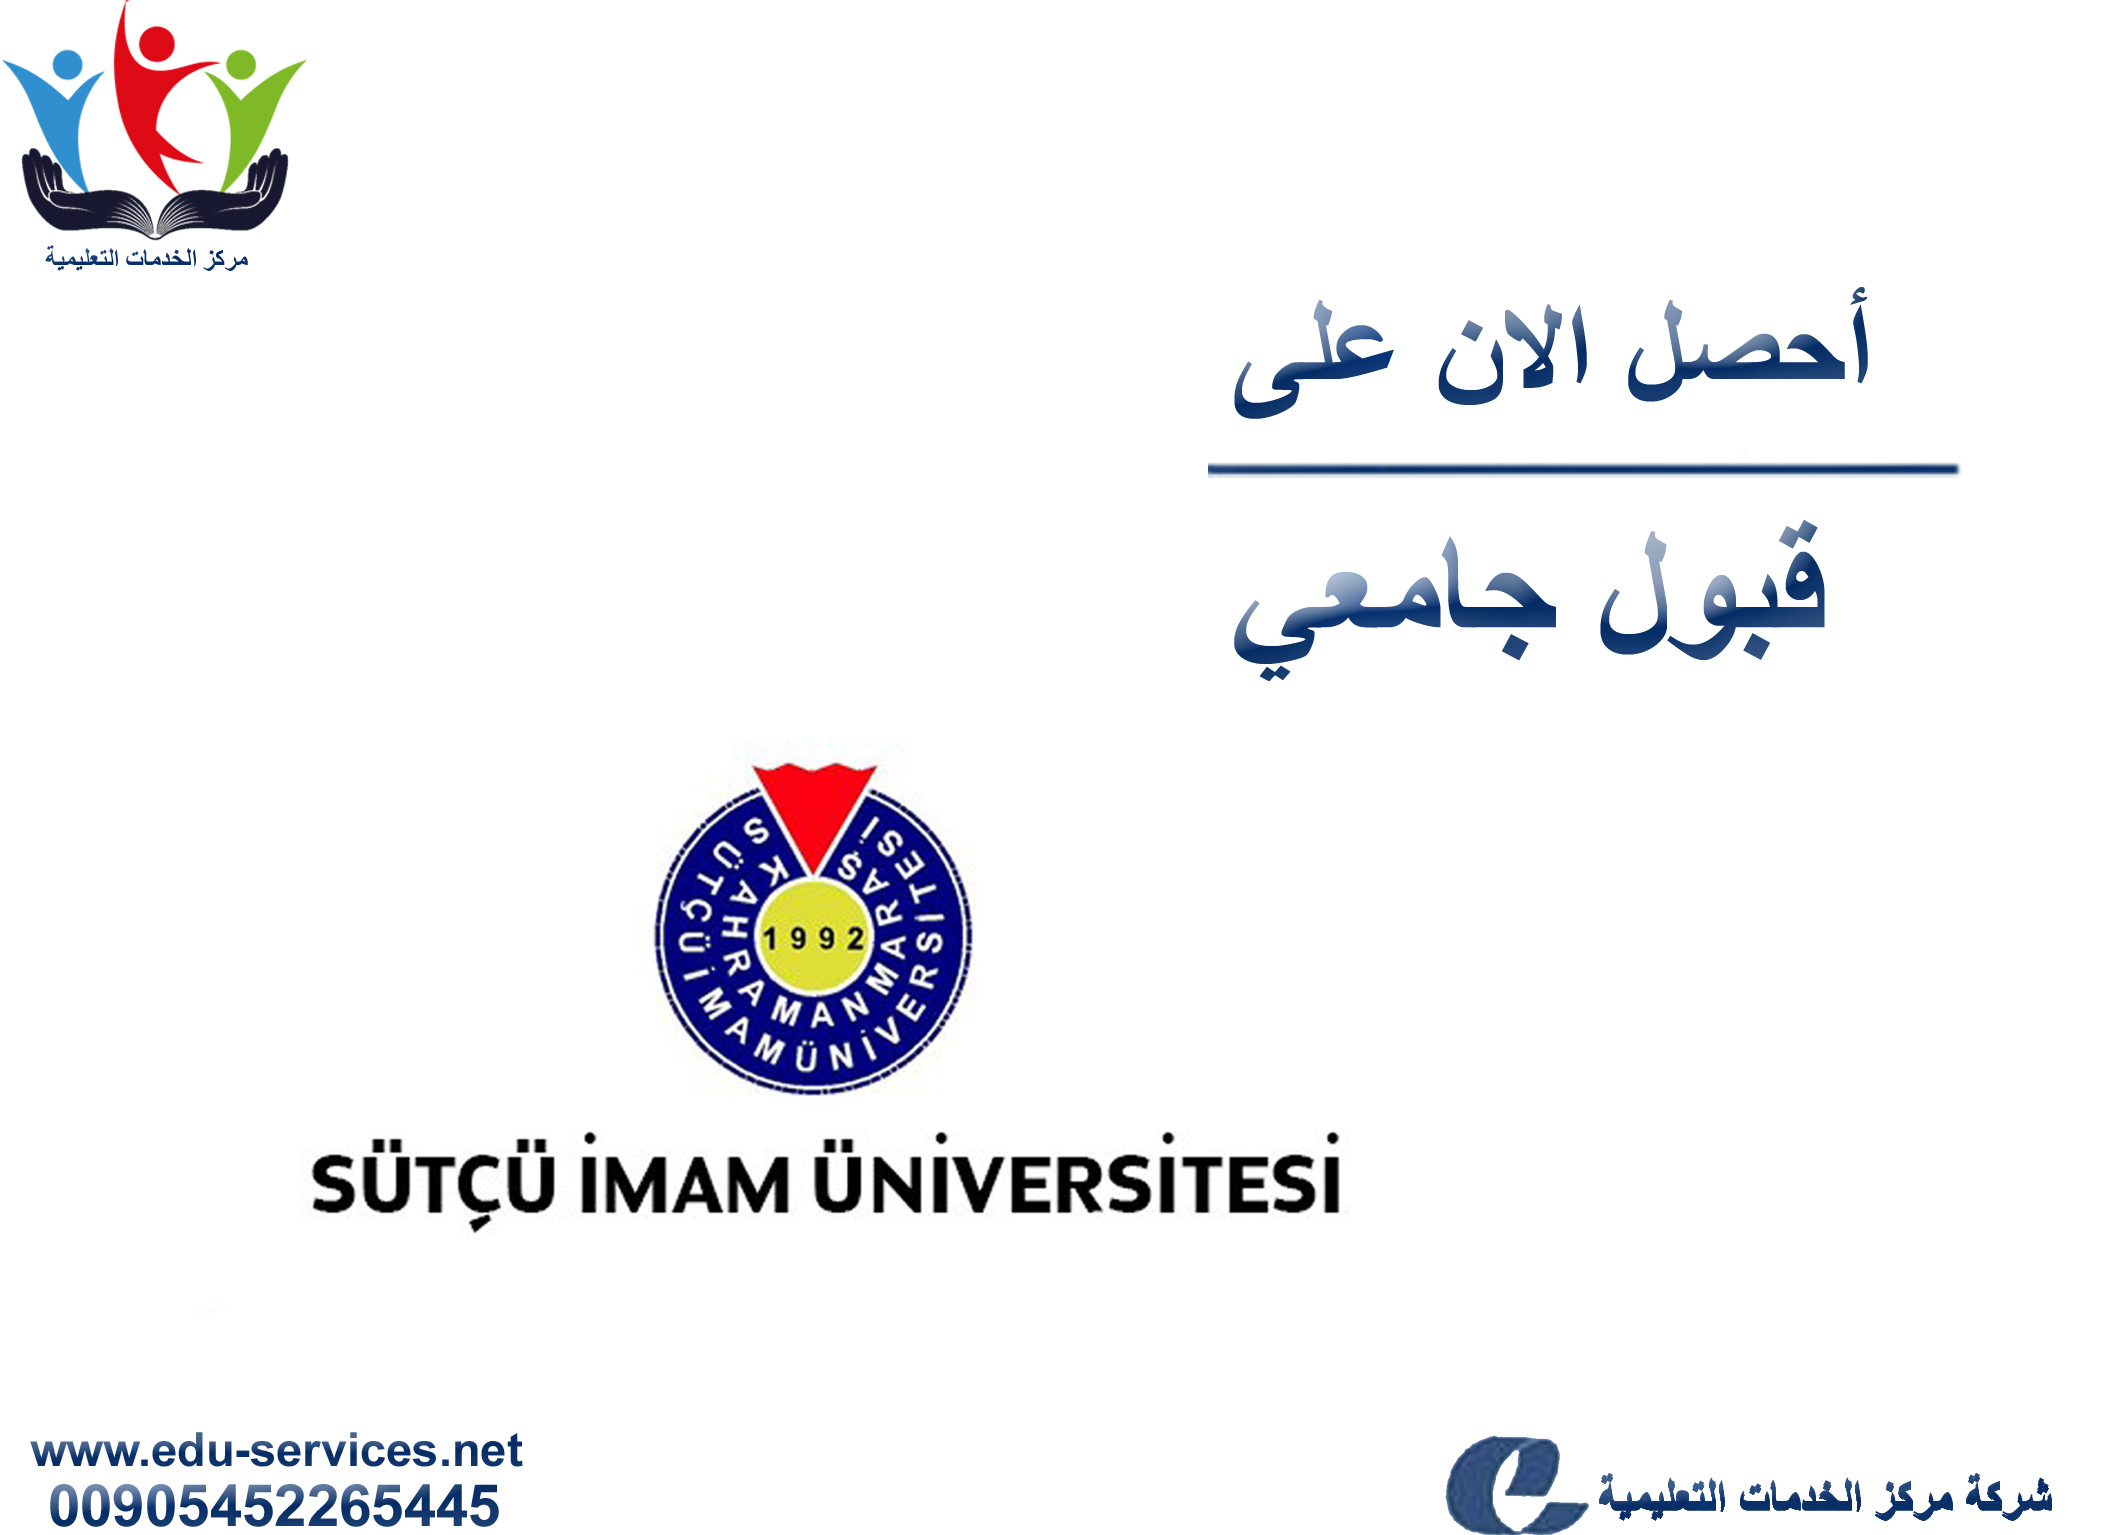 افتتاح التسجيل على جامعة كهرمان مرعش سوتشو امام لبرنامج الدراسات العليا للعام 2019-2020